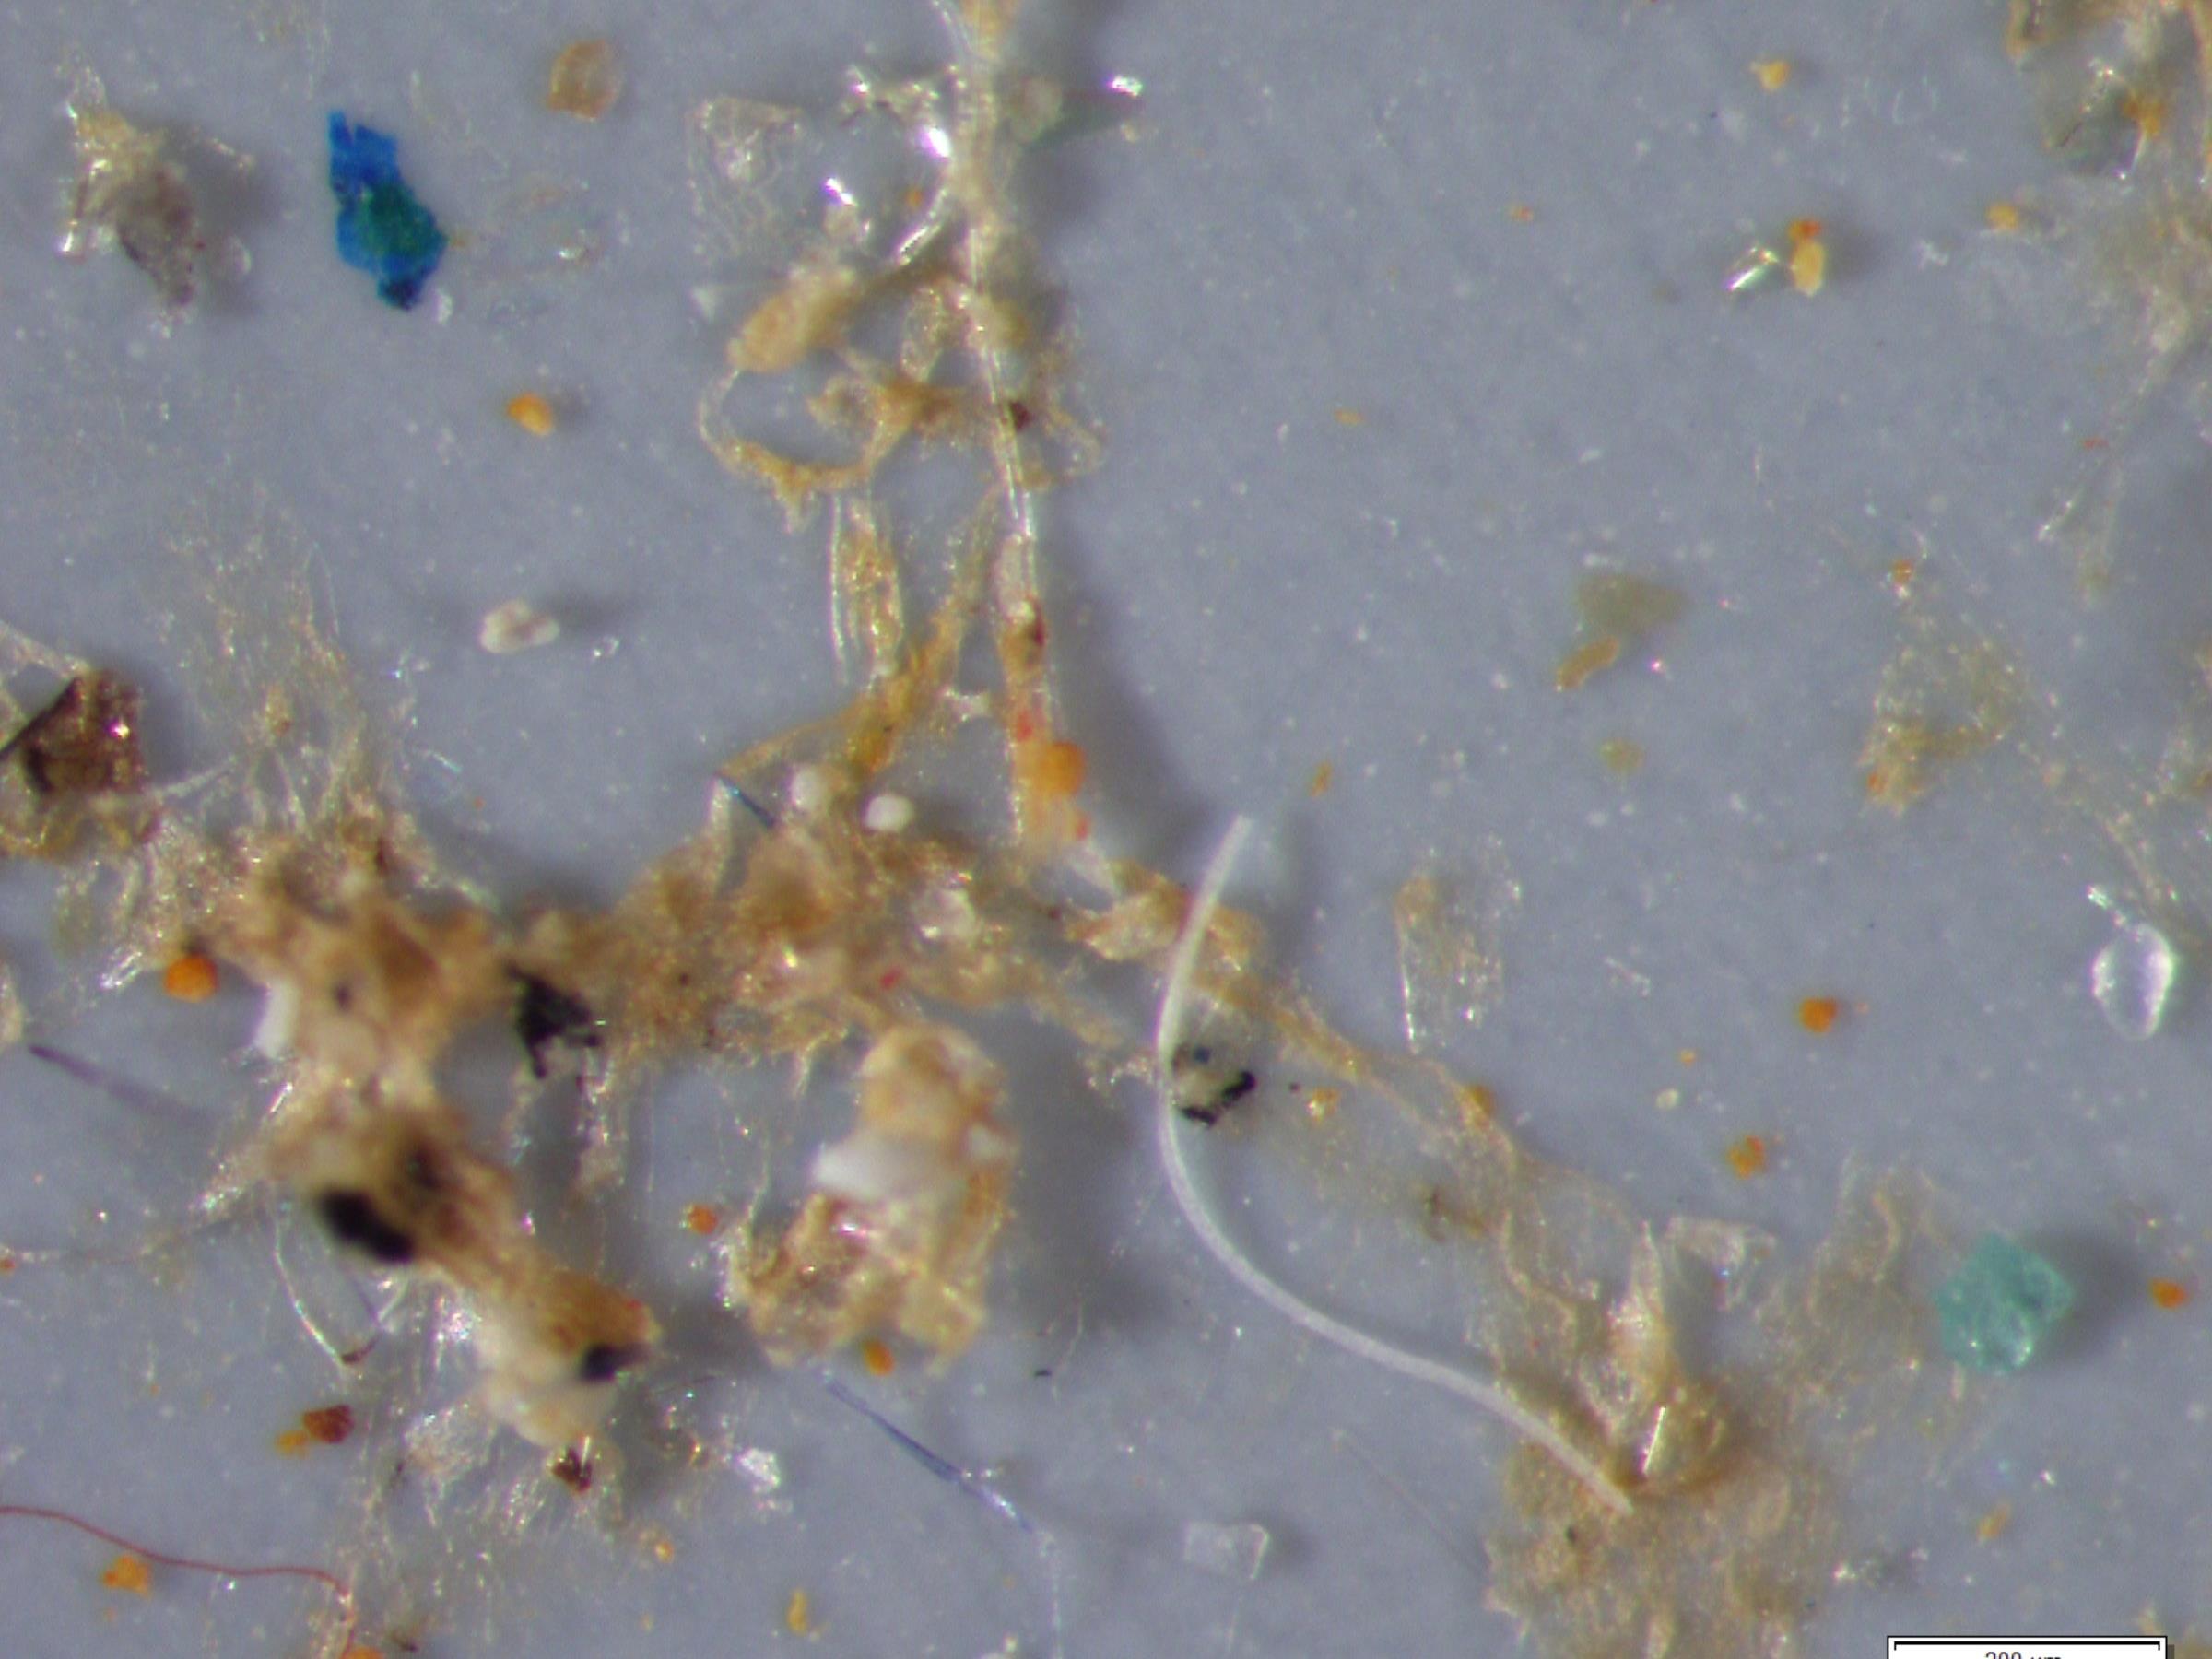 Mikroplastikpartikel in Speisefischen und Pflanzenfressern nachgewiesen